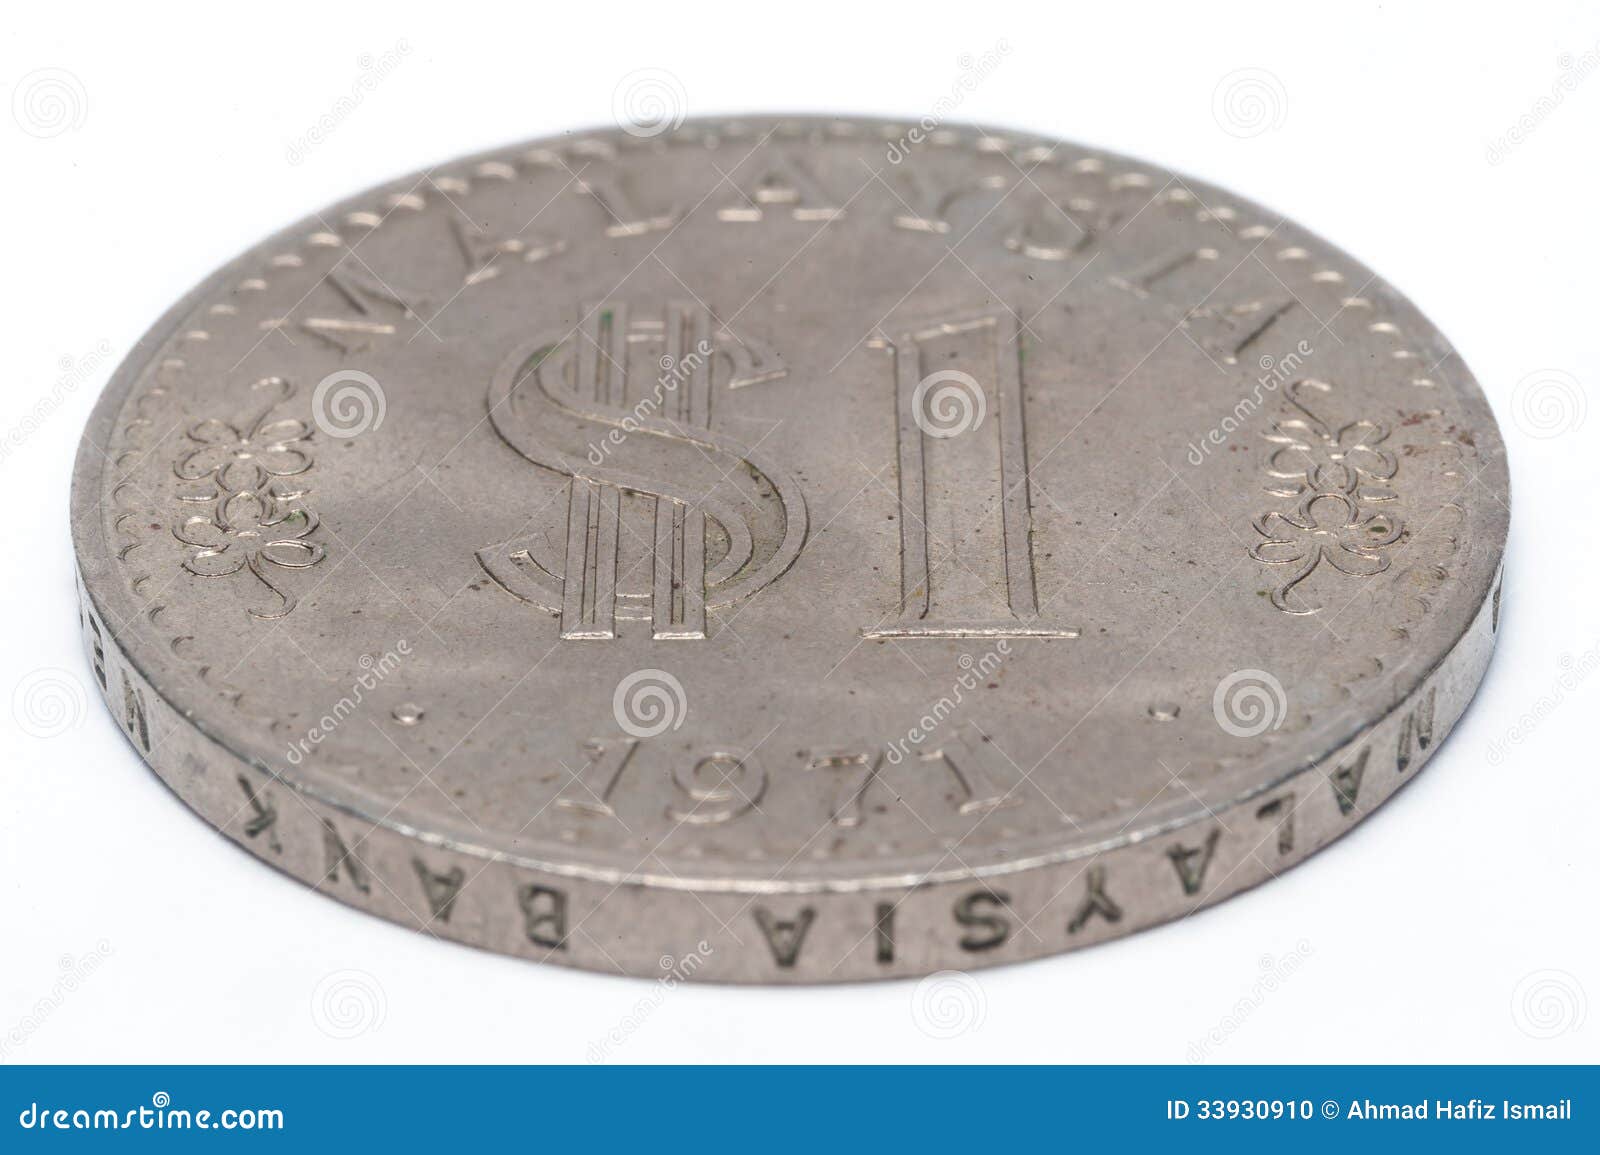 好品马来西亚1元硬币一组-价格:30元-se83673010-外国钱币-零售-7788收藏__收藏热线